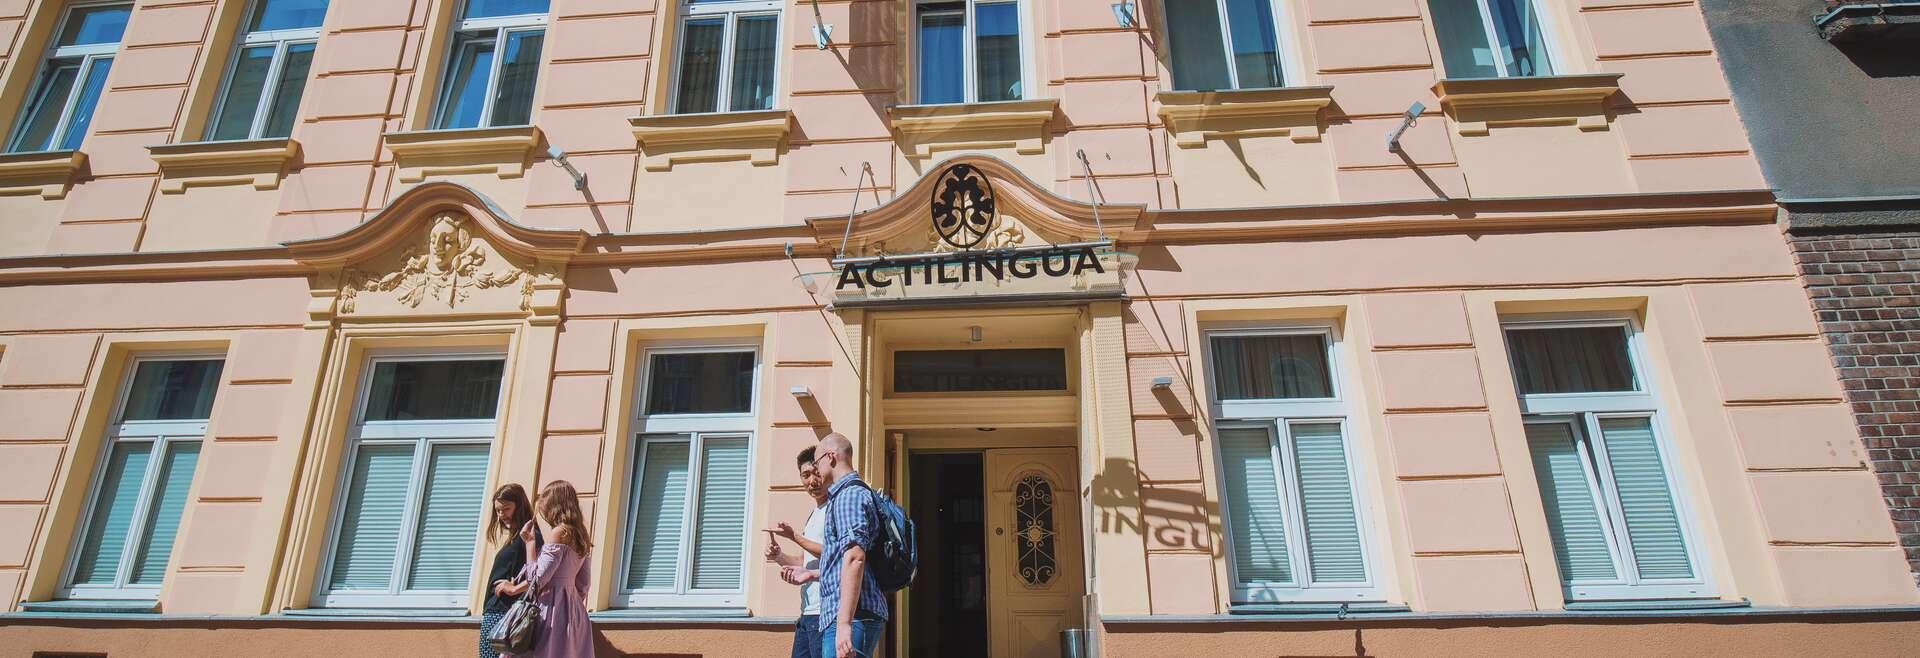 Séjour linguistique Autriche, Vienne, ActiLingua Academy Vienna, Bâtiment scolaire